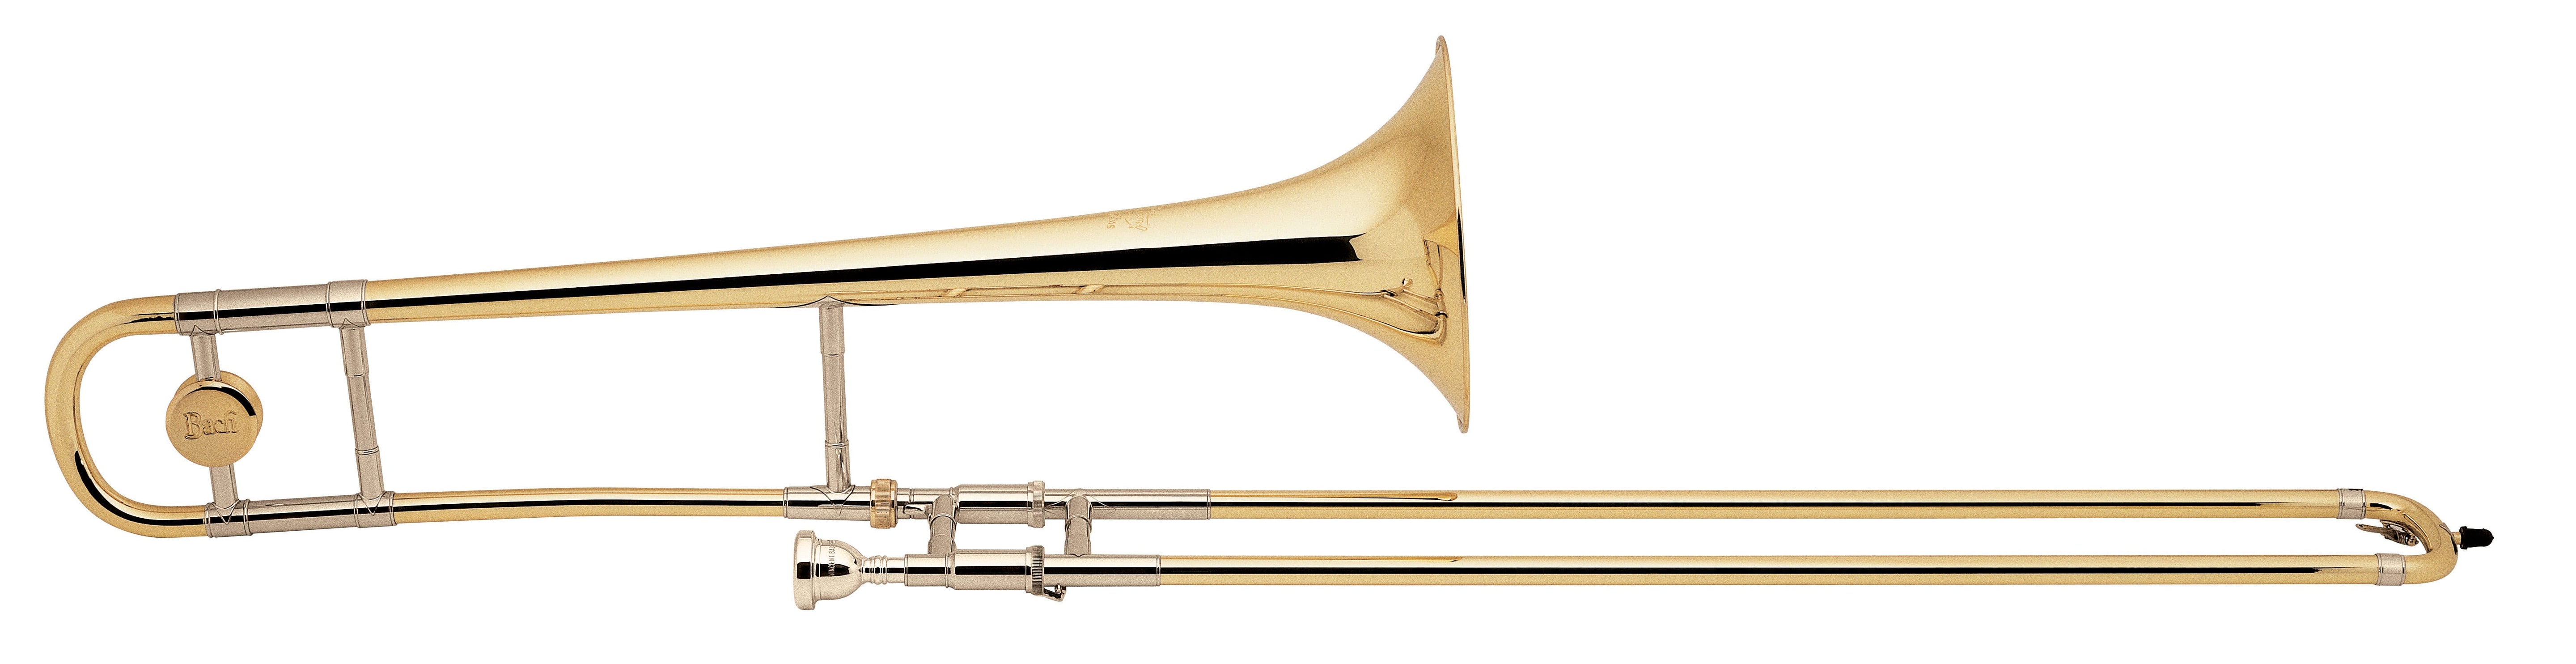 Bach stradivarius trombone model 12 with lightweight handslide